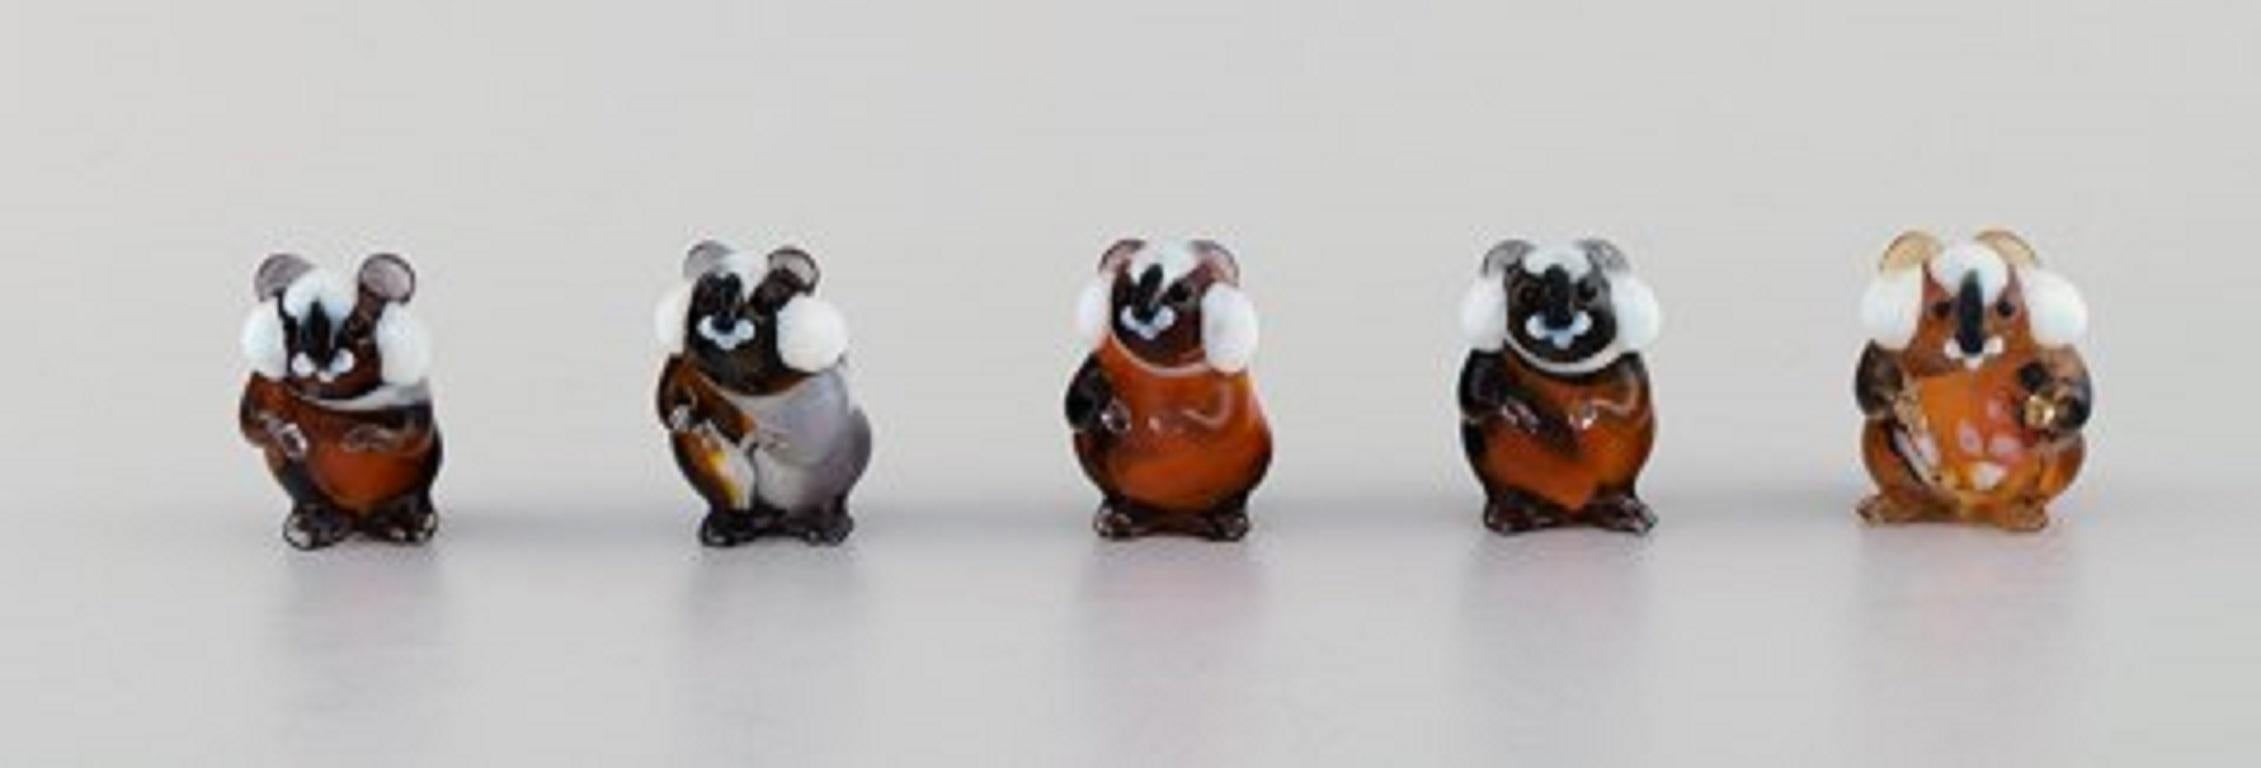 Schwedisches Kunstglas. Zehn Miniaturfiguren aus mundgeblasenem Kunstglas, 1970er-1980er Jahre.
Maße des Siegels: 7.5 x 4 cm.
Hund misst: 10 x 3 cm.
In ausgezeichnetem Zustand.